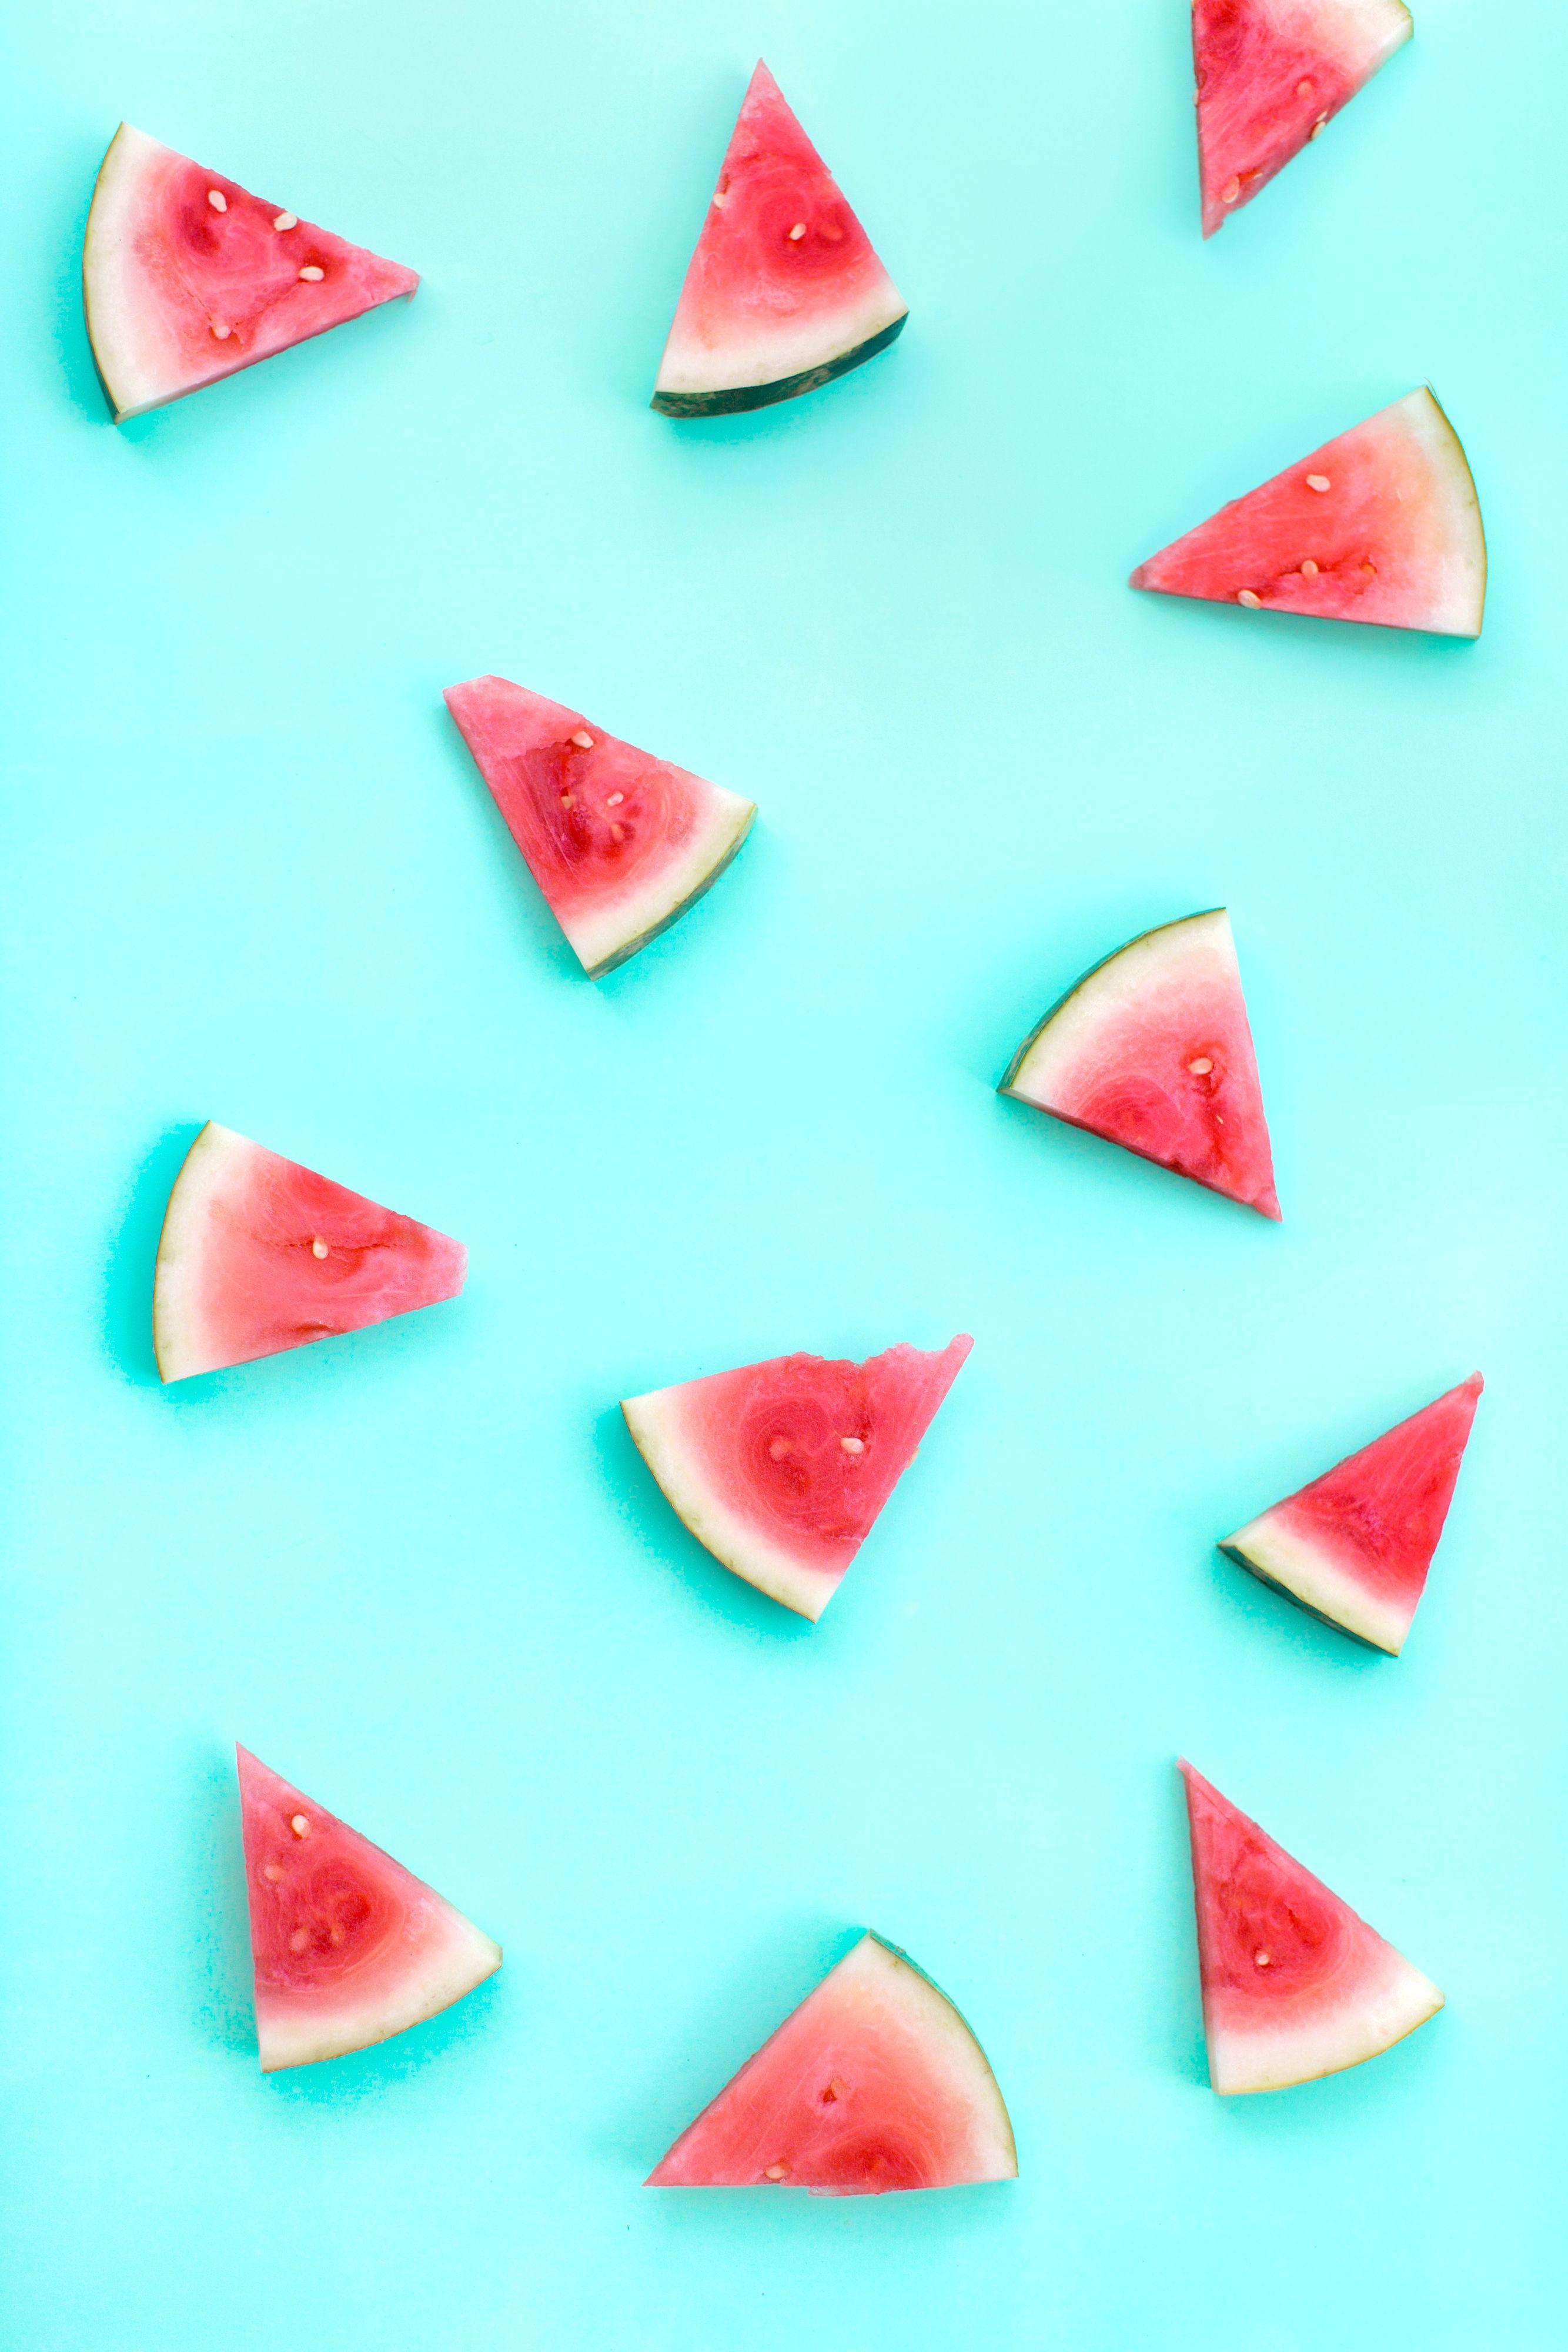 Watermelon summer cell phone wallpaper. Watermelon wallpaper